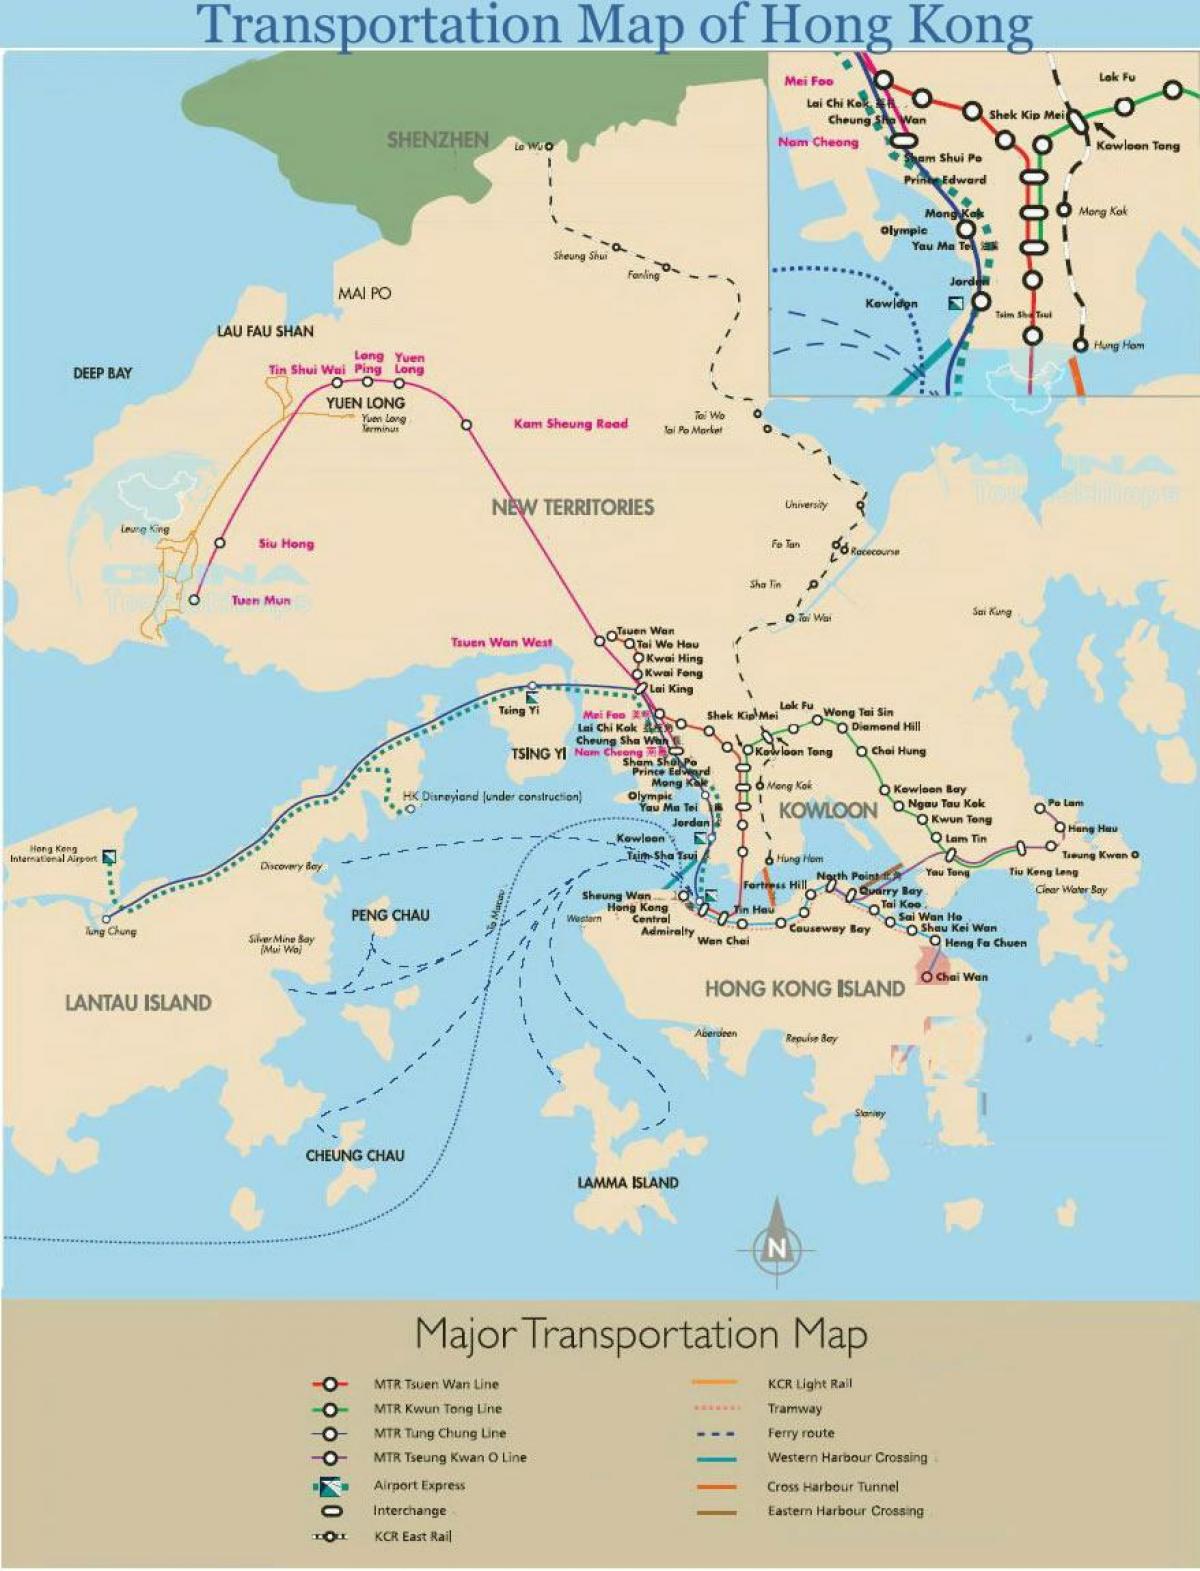 ہانگ کانگ فیری کے راستوں کا نقشہ